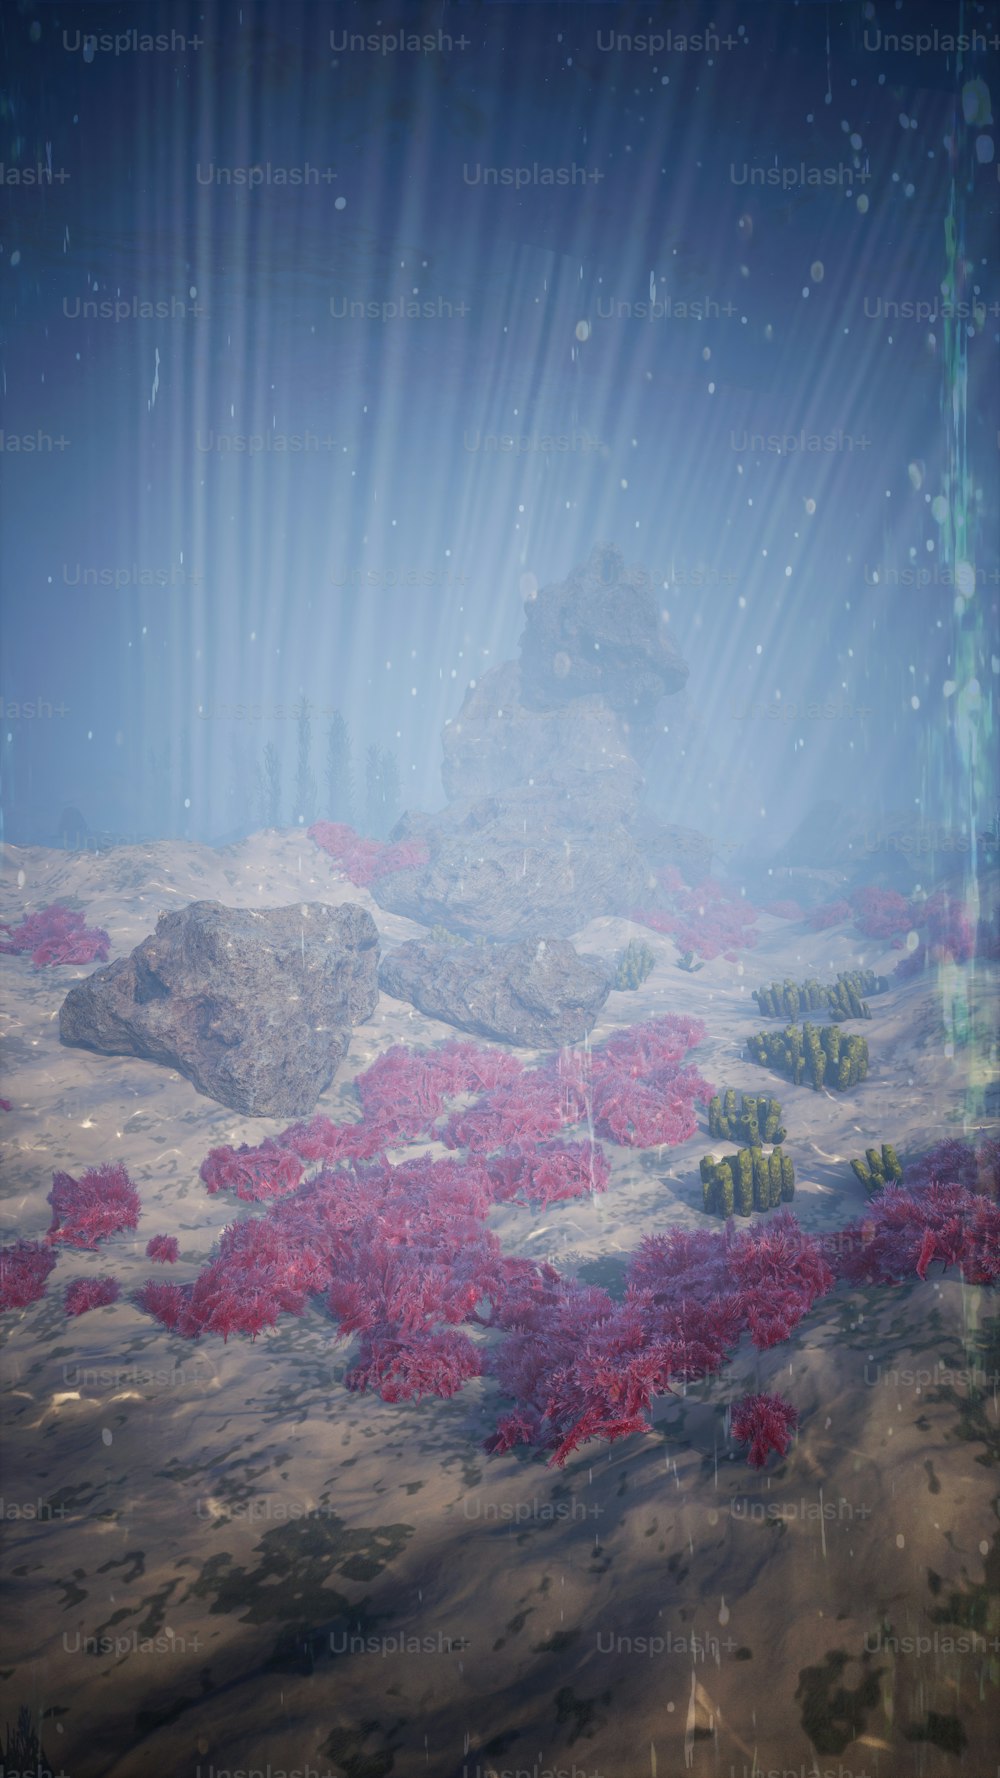 Eine Unterwasserszene mit roten Pflanzen und Felsen